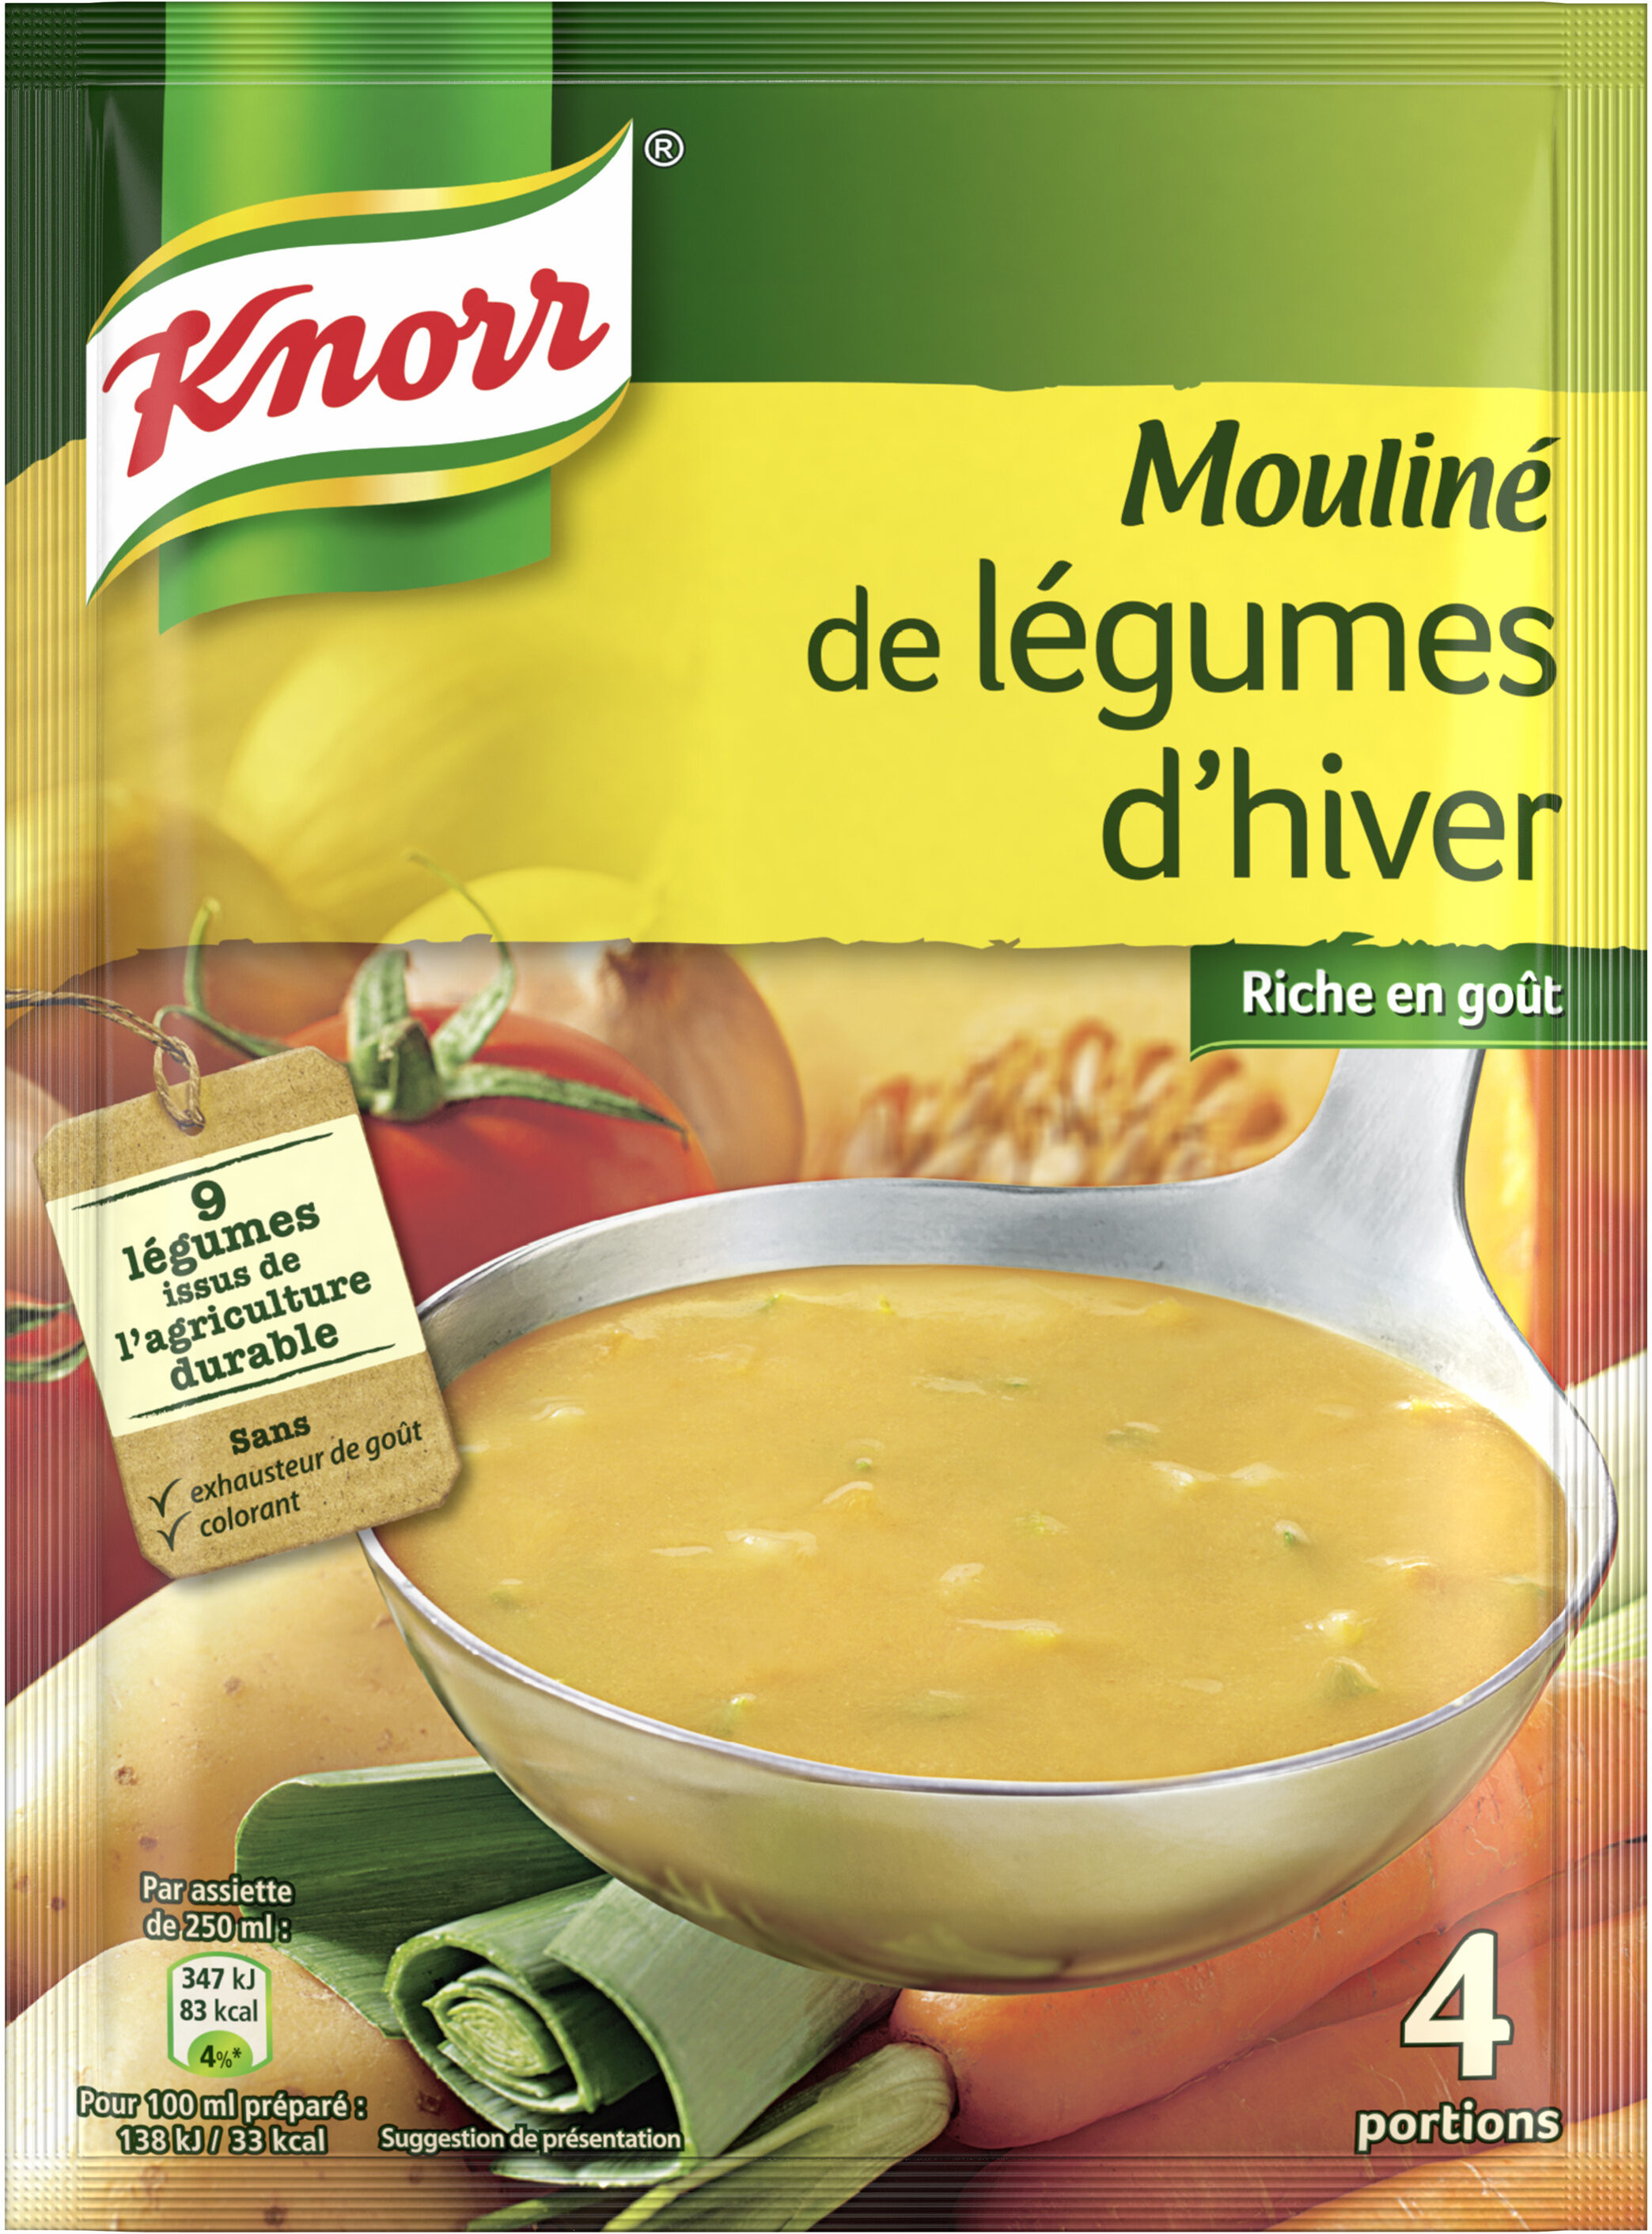 Knorr Mouliné de Légumes d'Hiver 95g 4 Portions - Product - fr